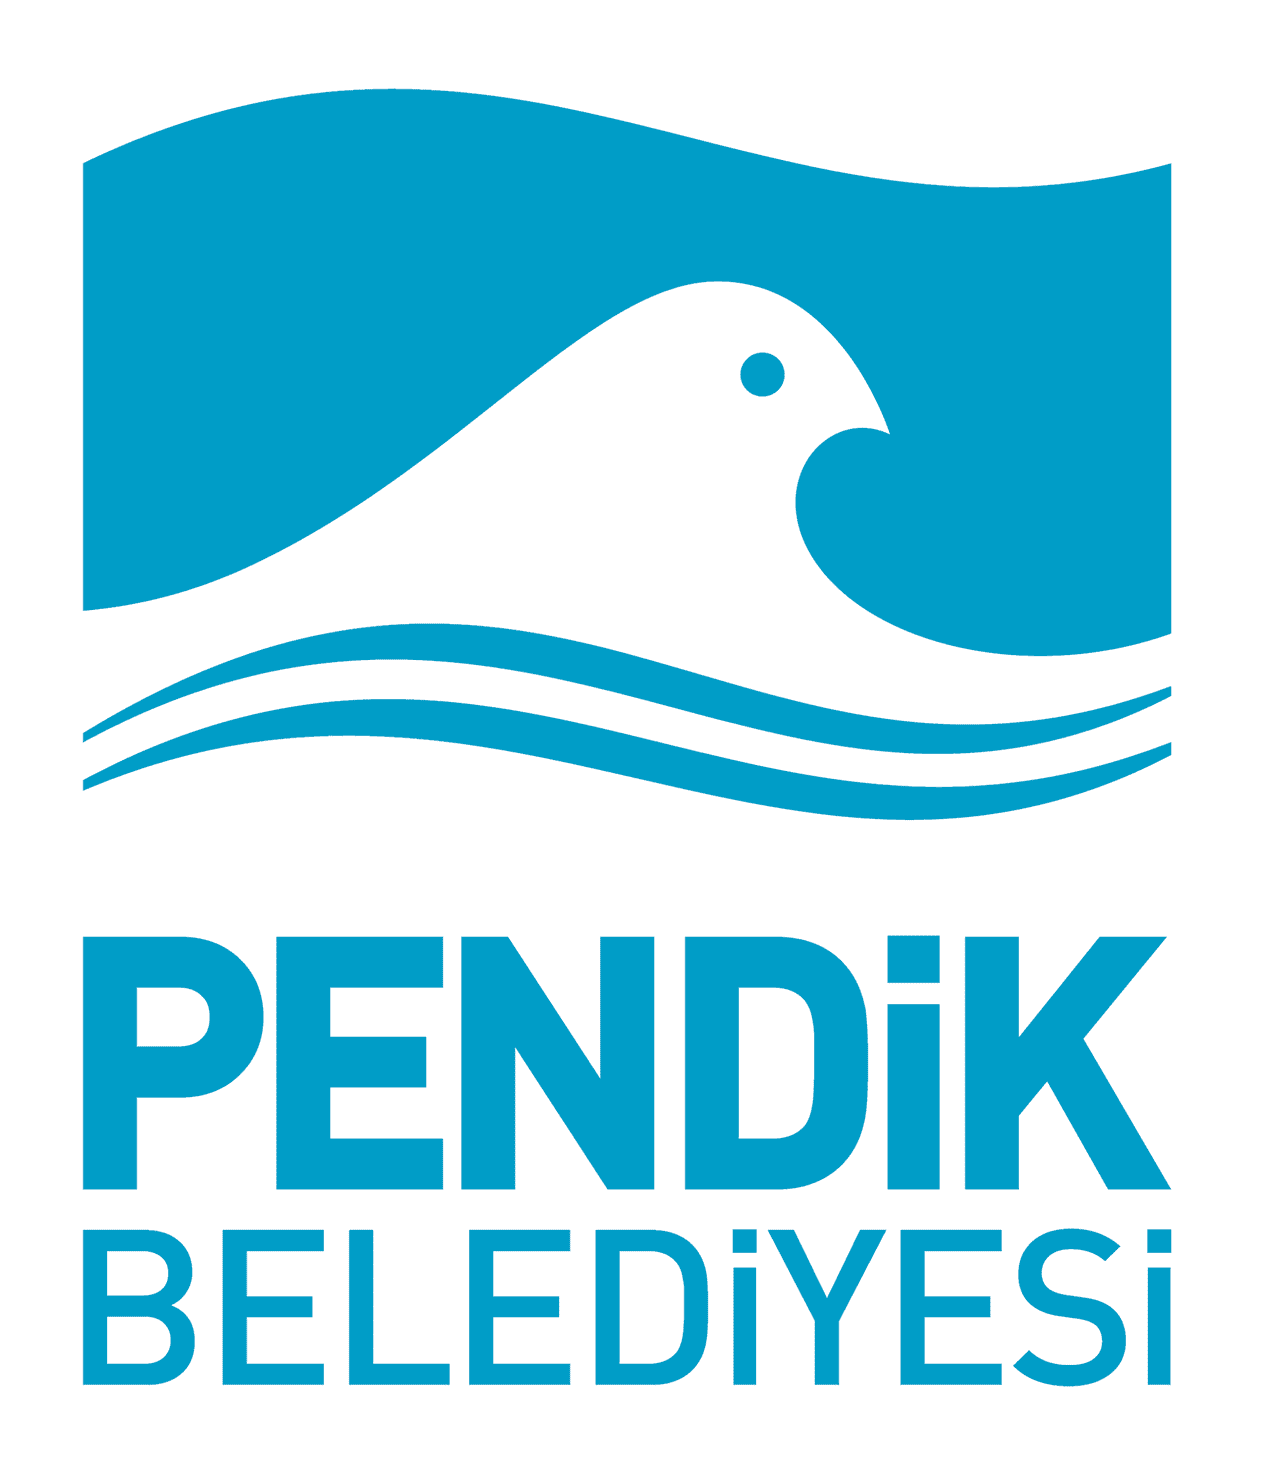 pendik belediyesi logo